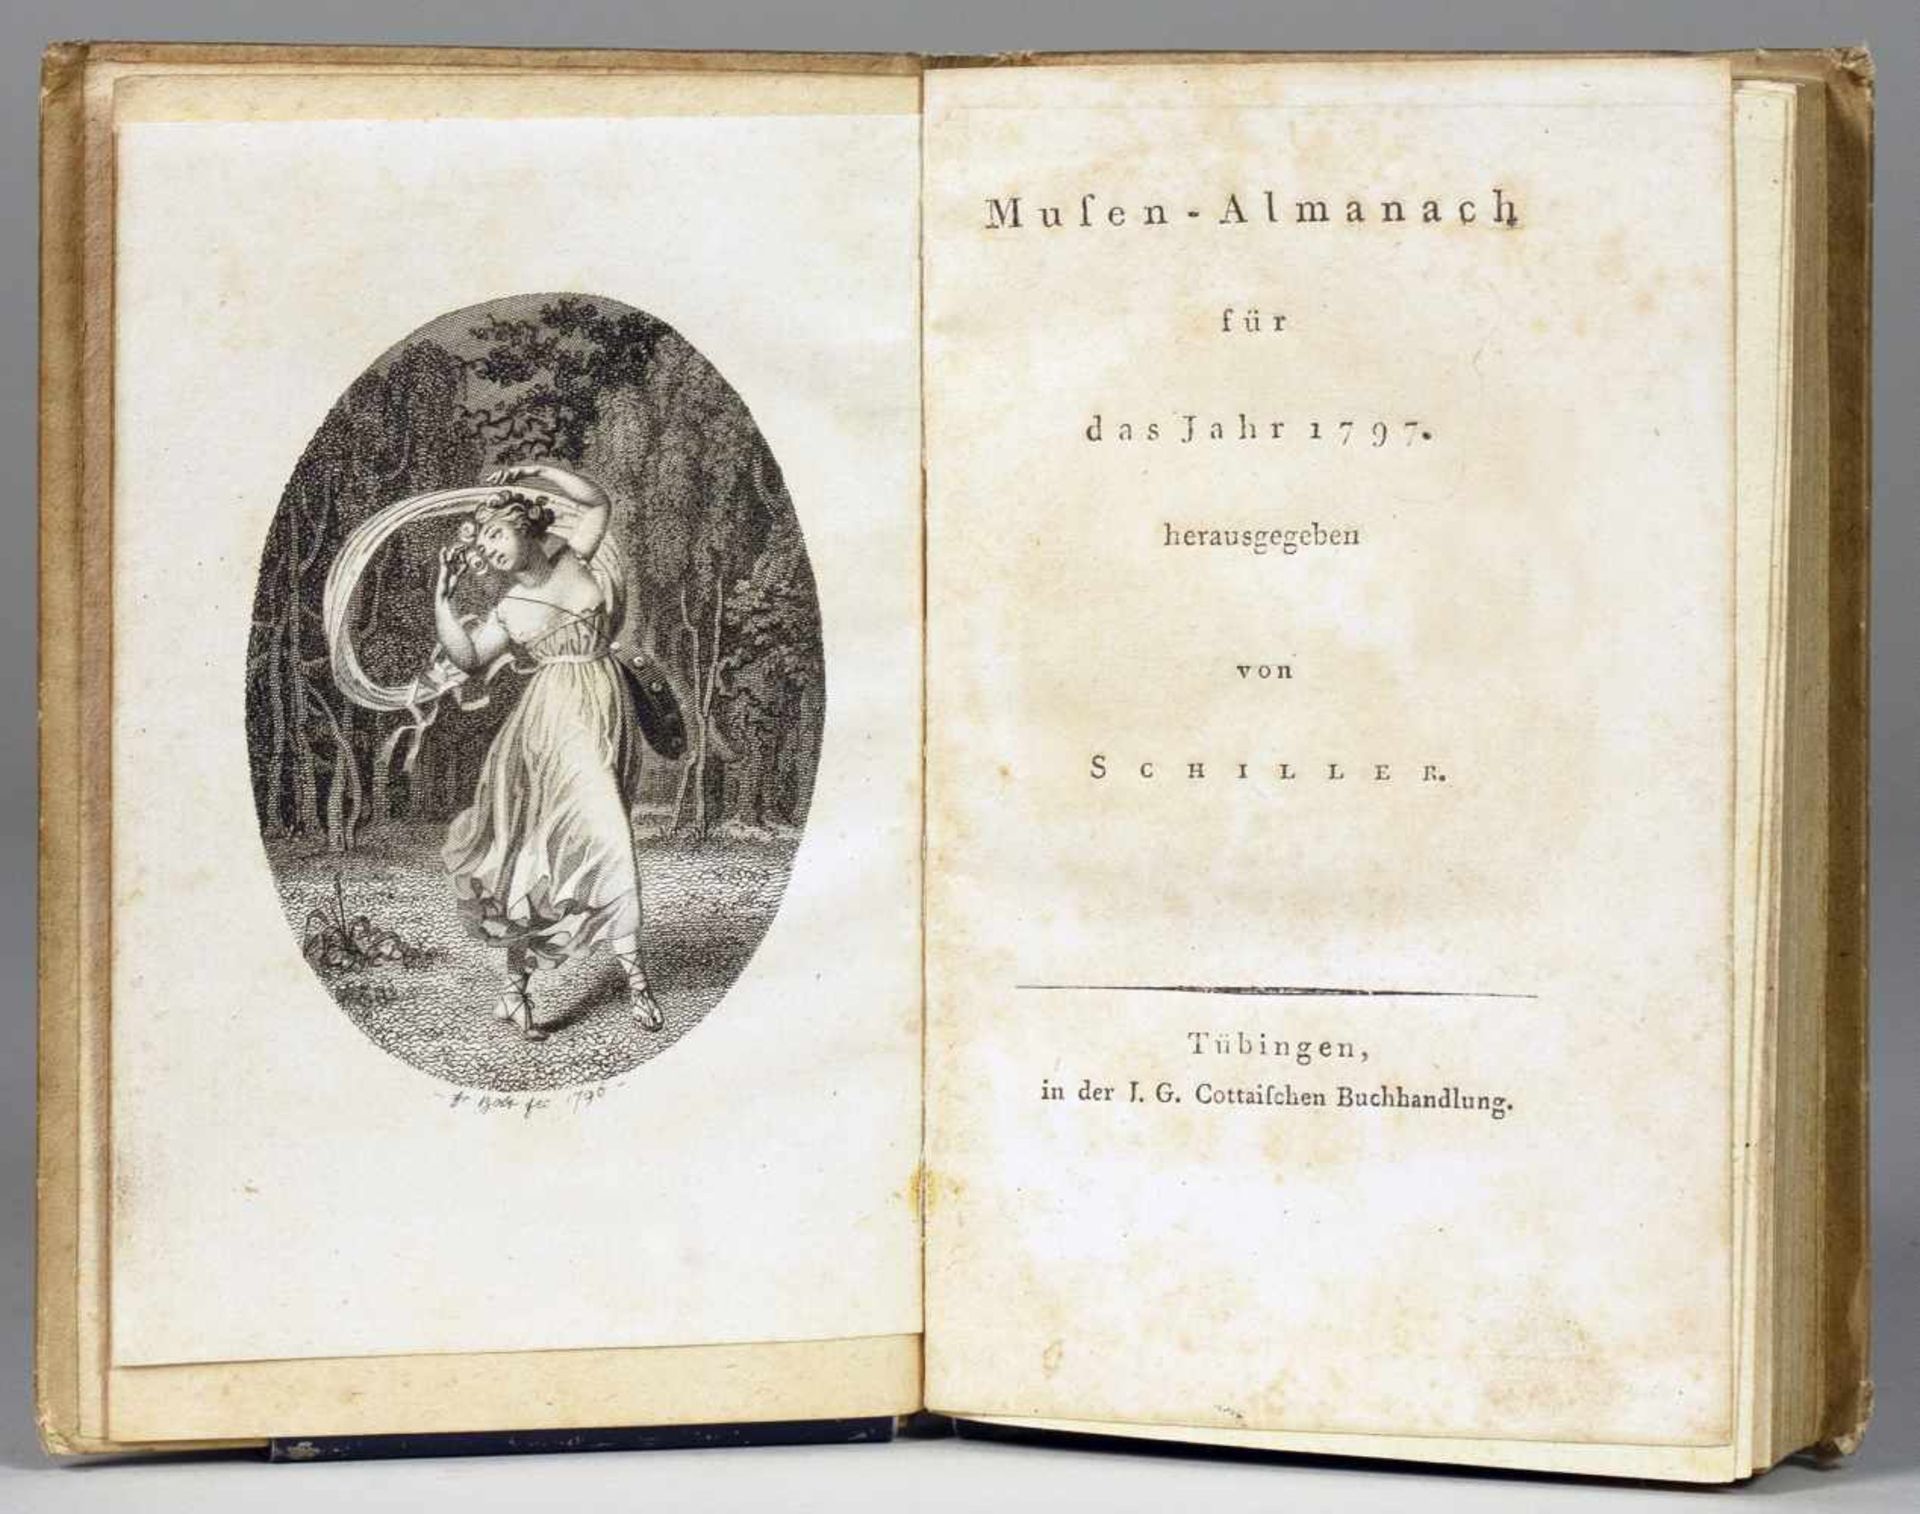 Schillers Xenienalmanach - Musen-Almanach für das Jahr 1797. Herausgegeben von Schiller. Tübingen,